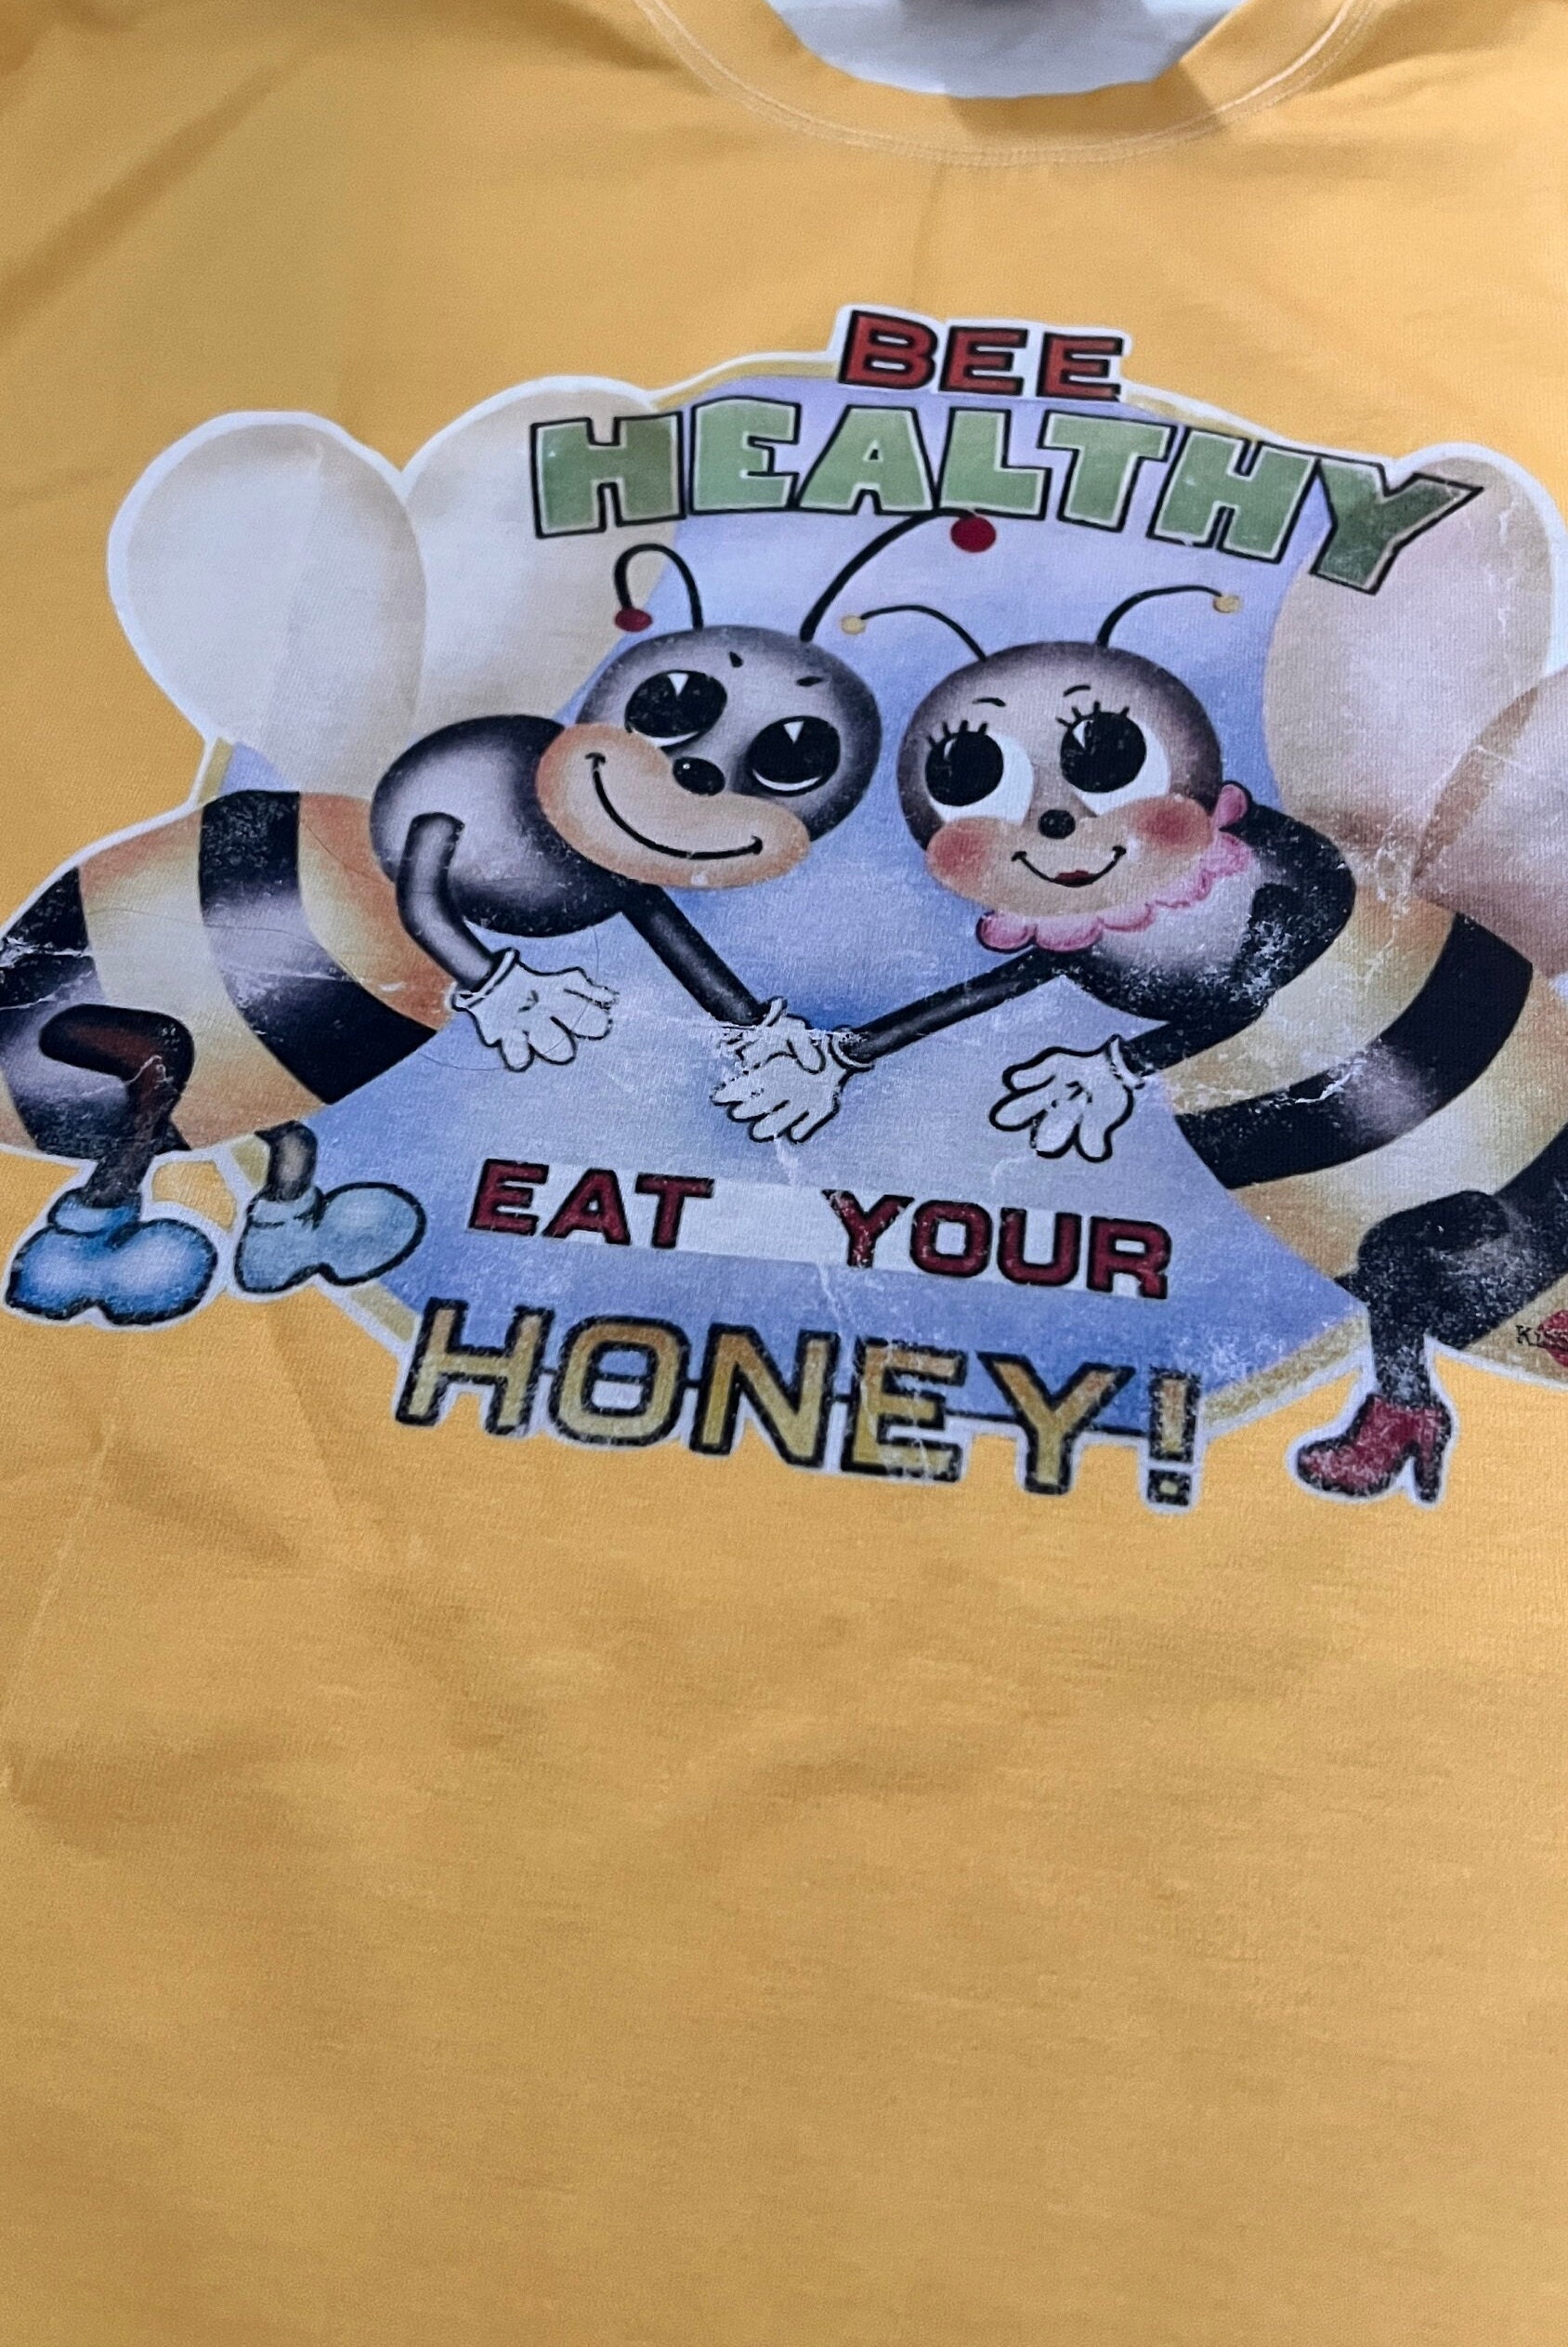 William Jacket Tyler Durden Bee Healthy Eat Your Honey Shirt